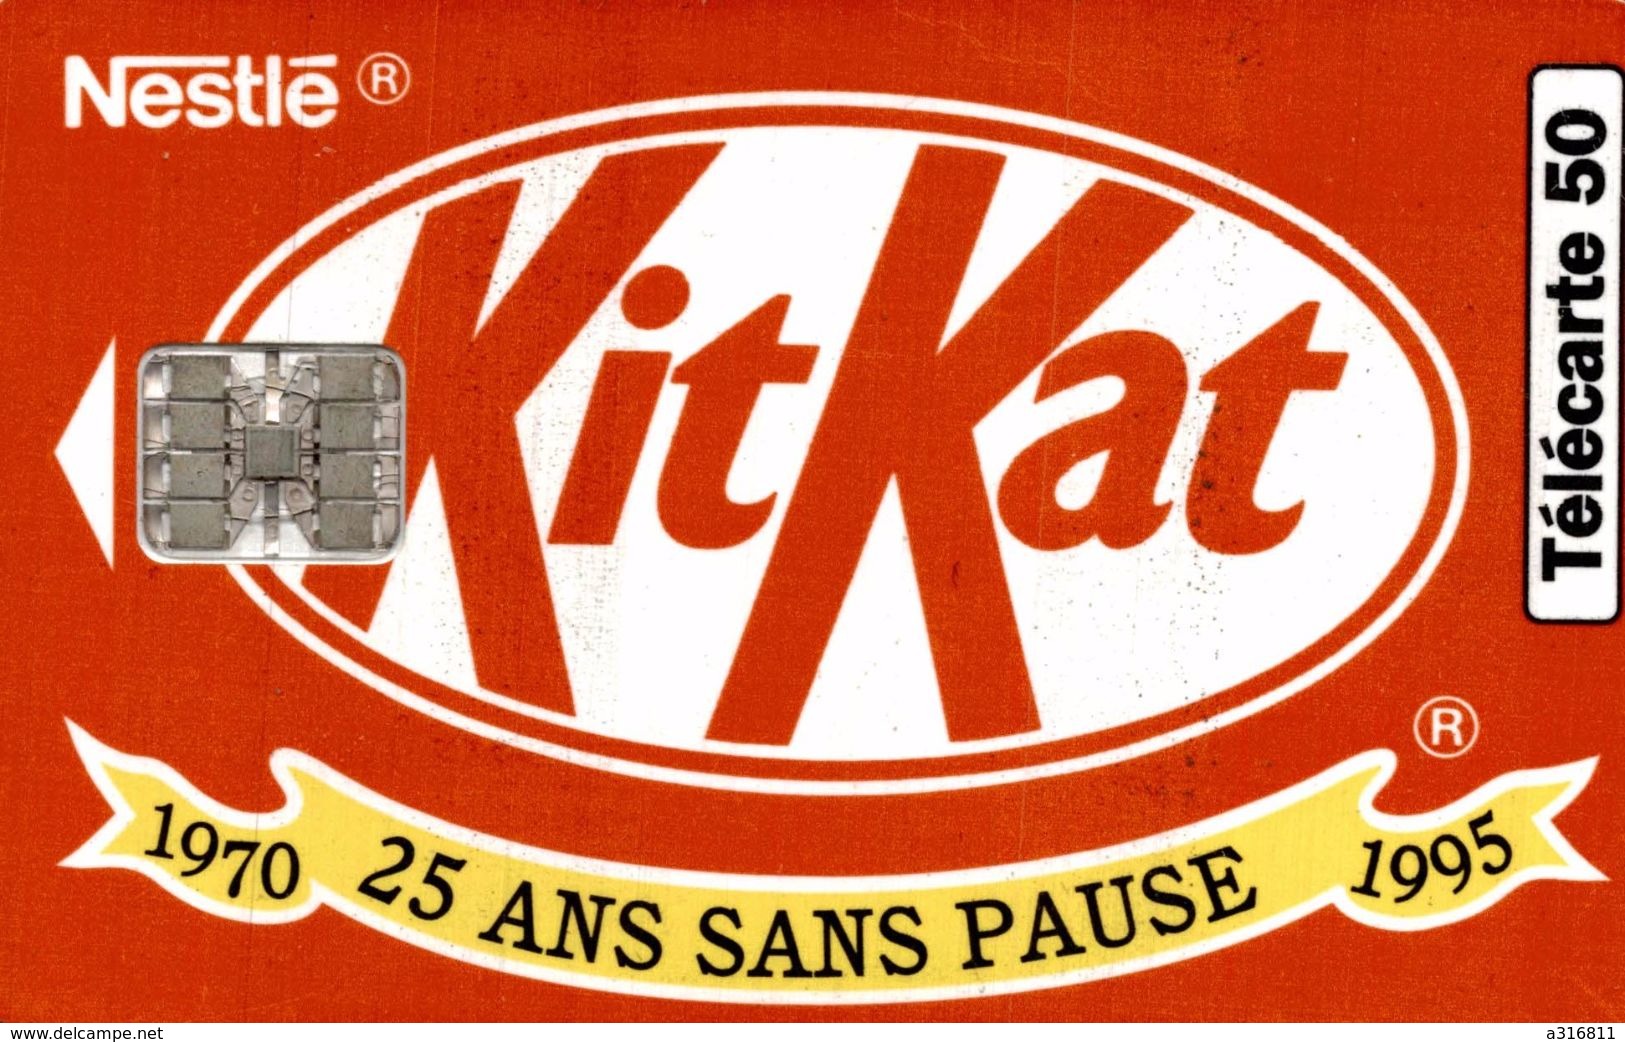 KIT KAT - Telefoonkaarten Voor Particulieren